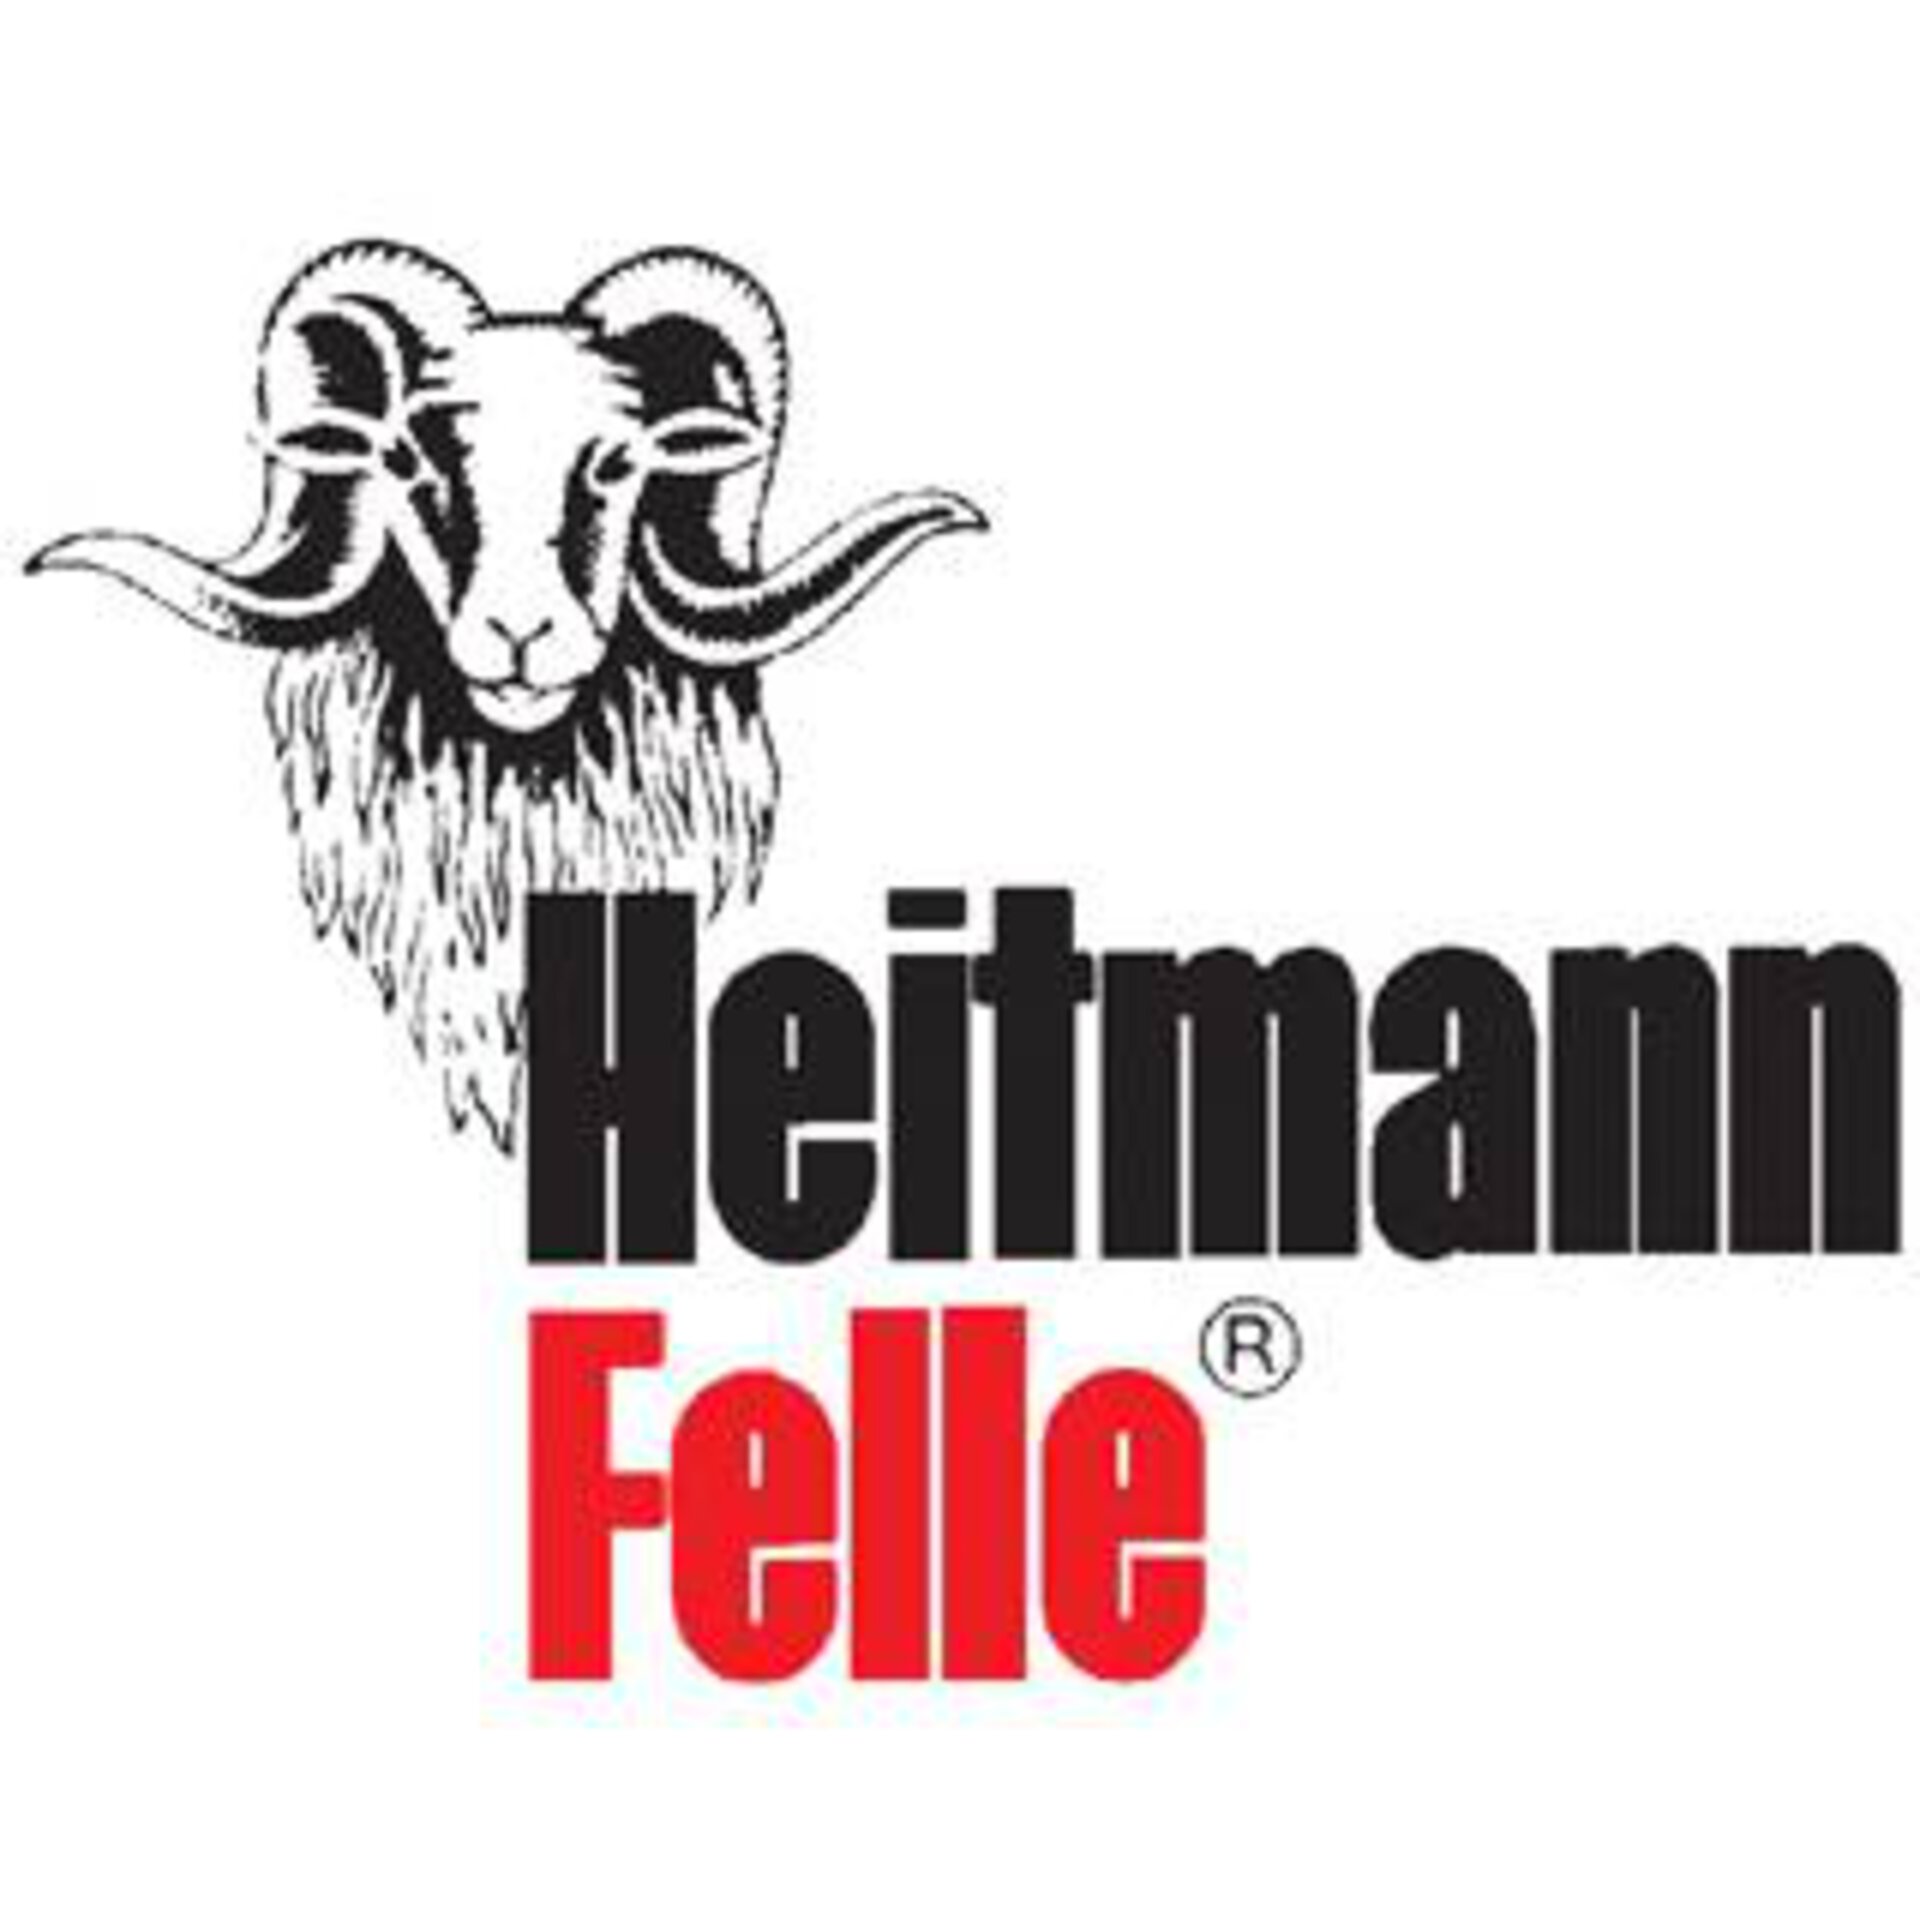 Heitmann-Felle